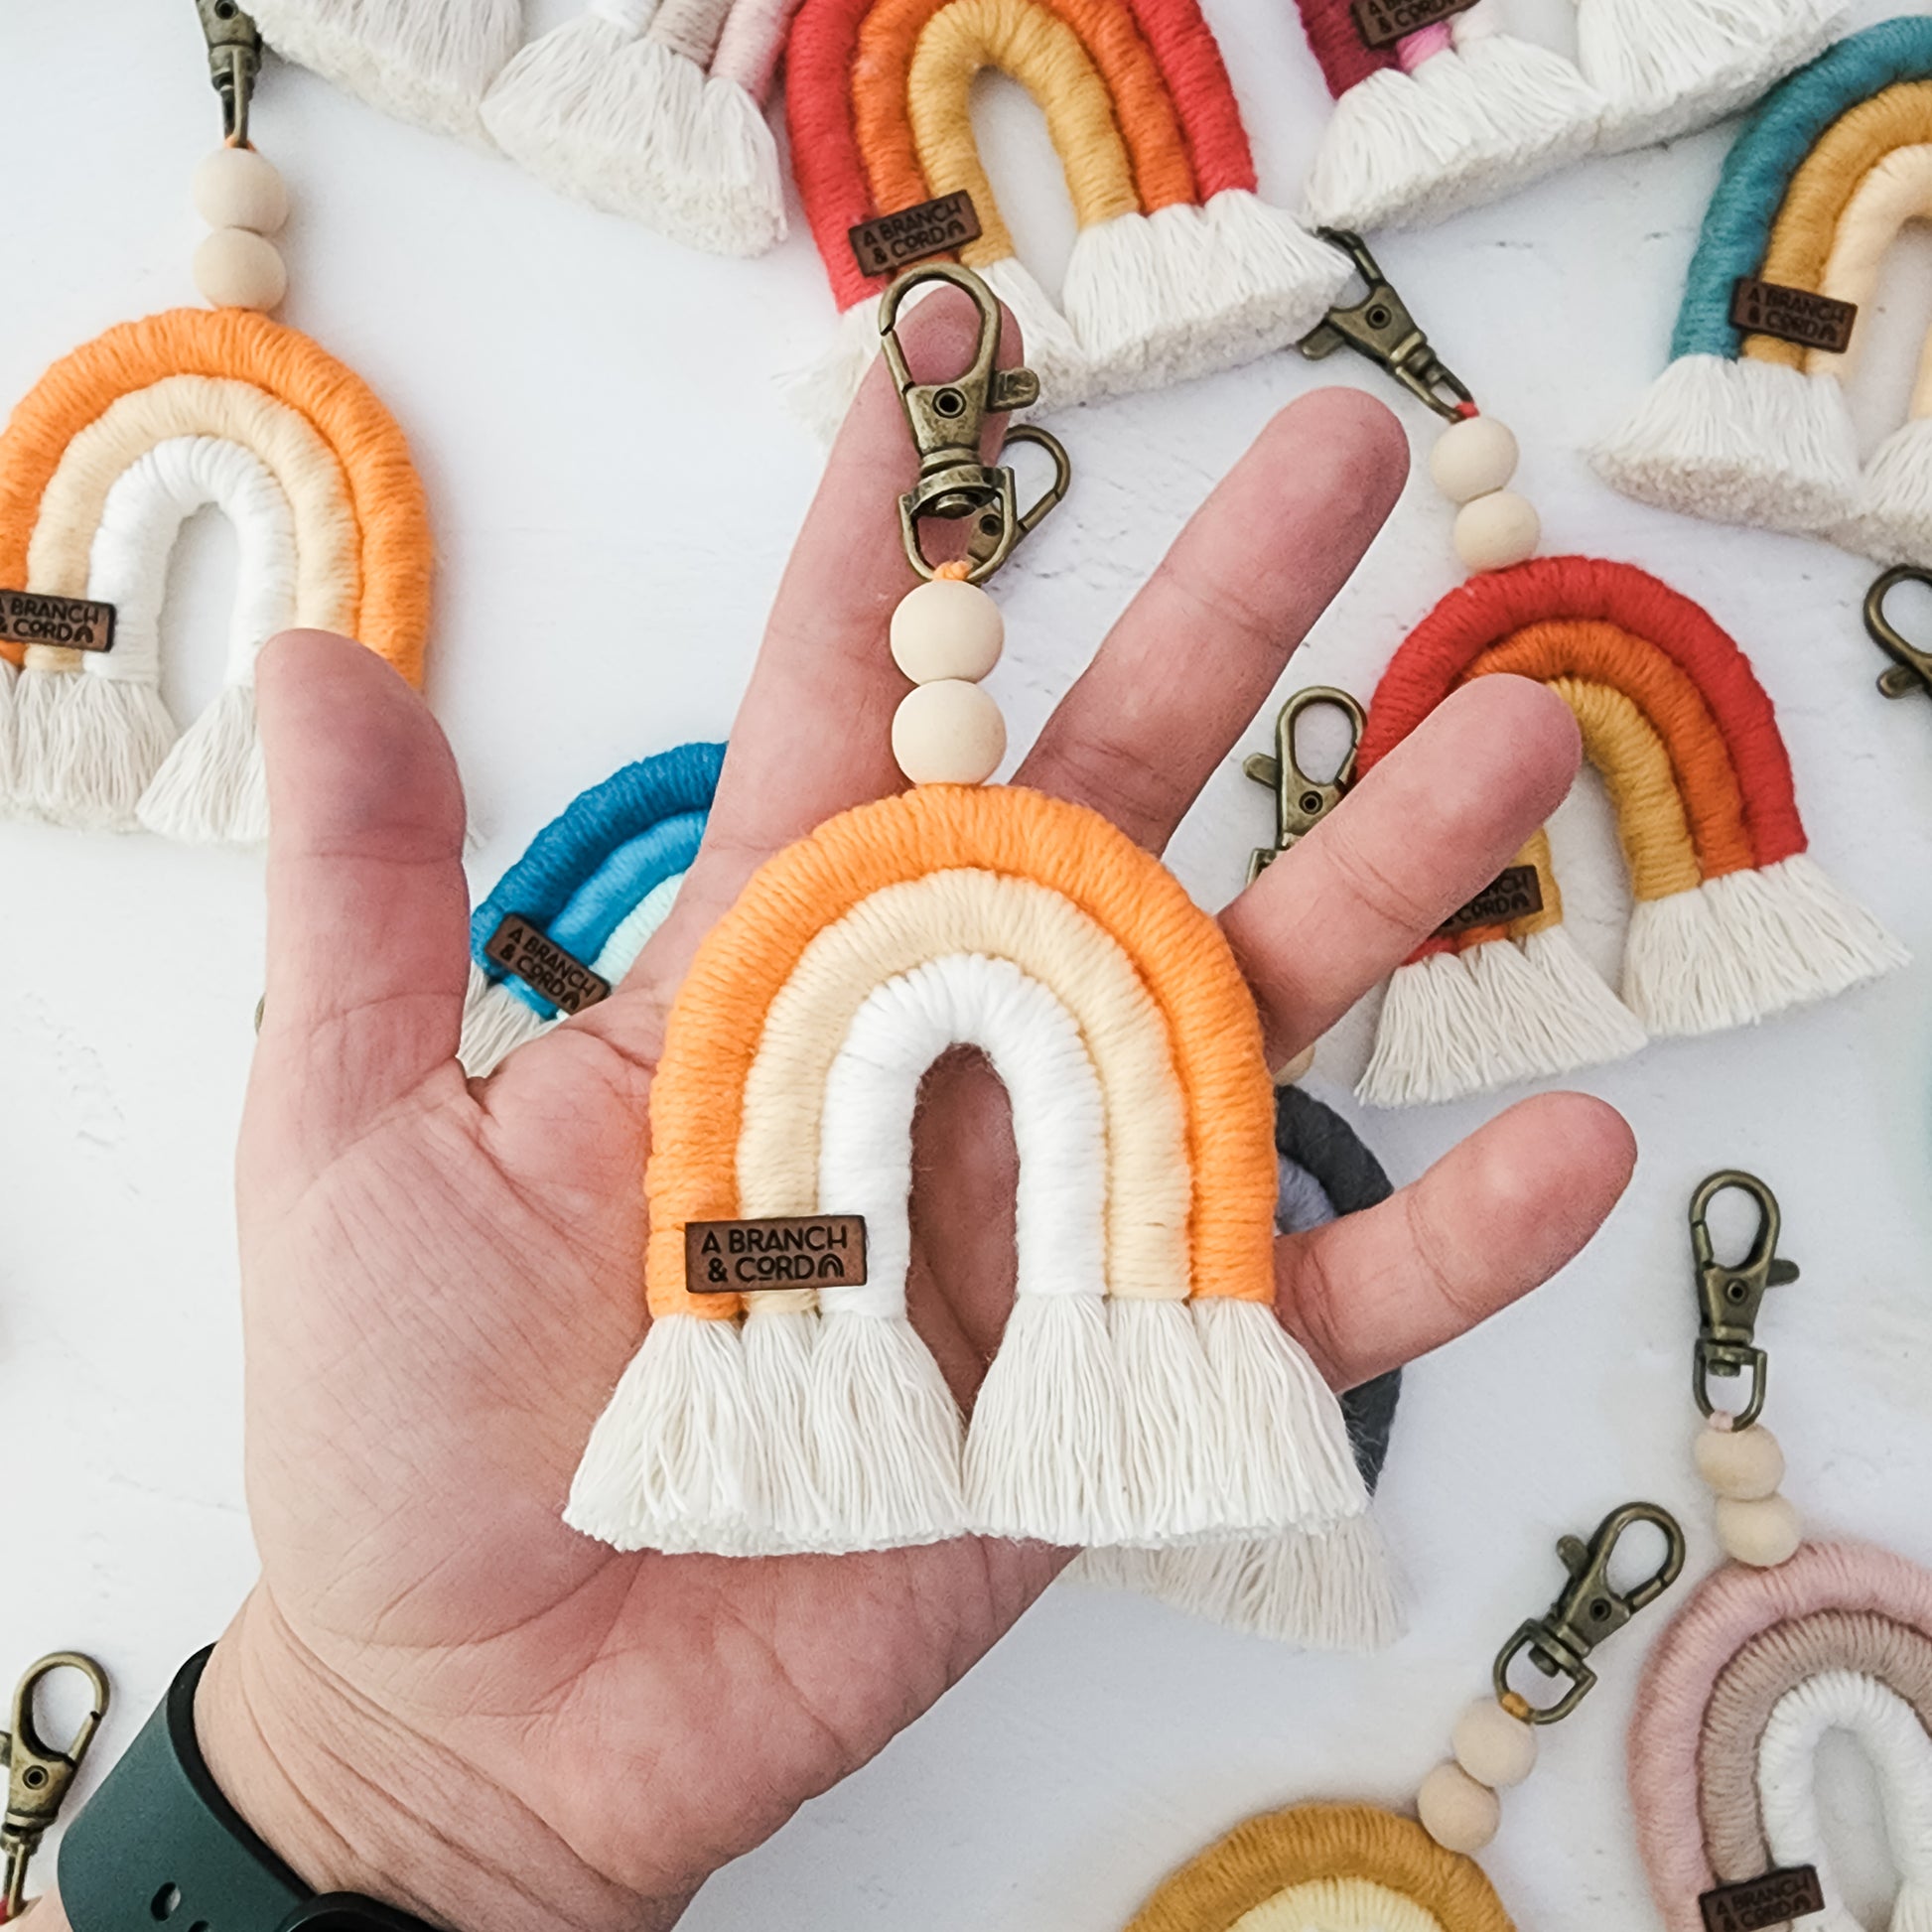 Handmade carabiner keychain - rainbow bamboo – Hum Crafts Art